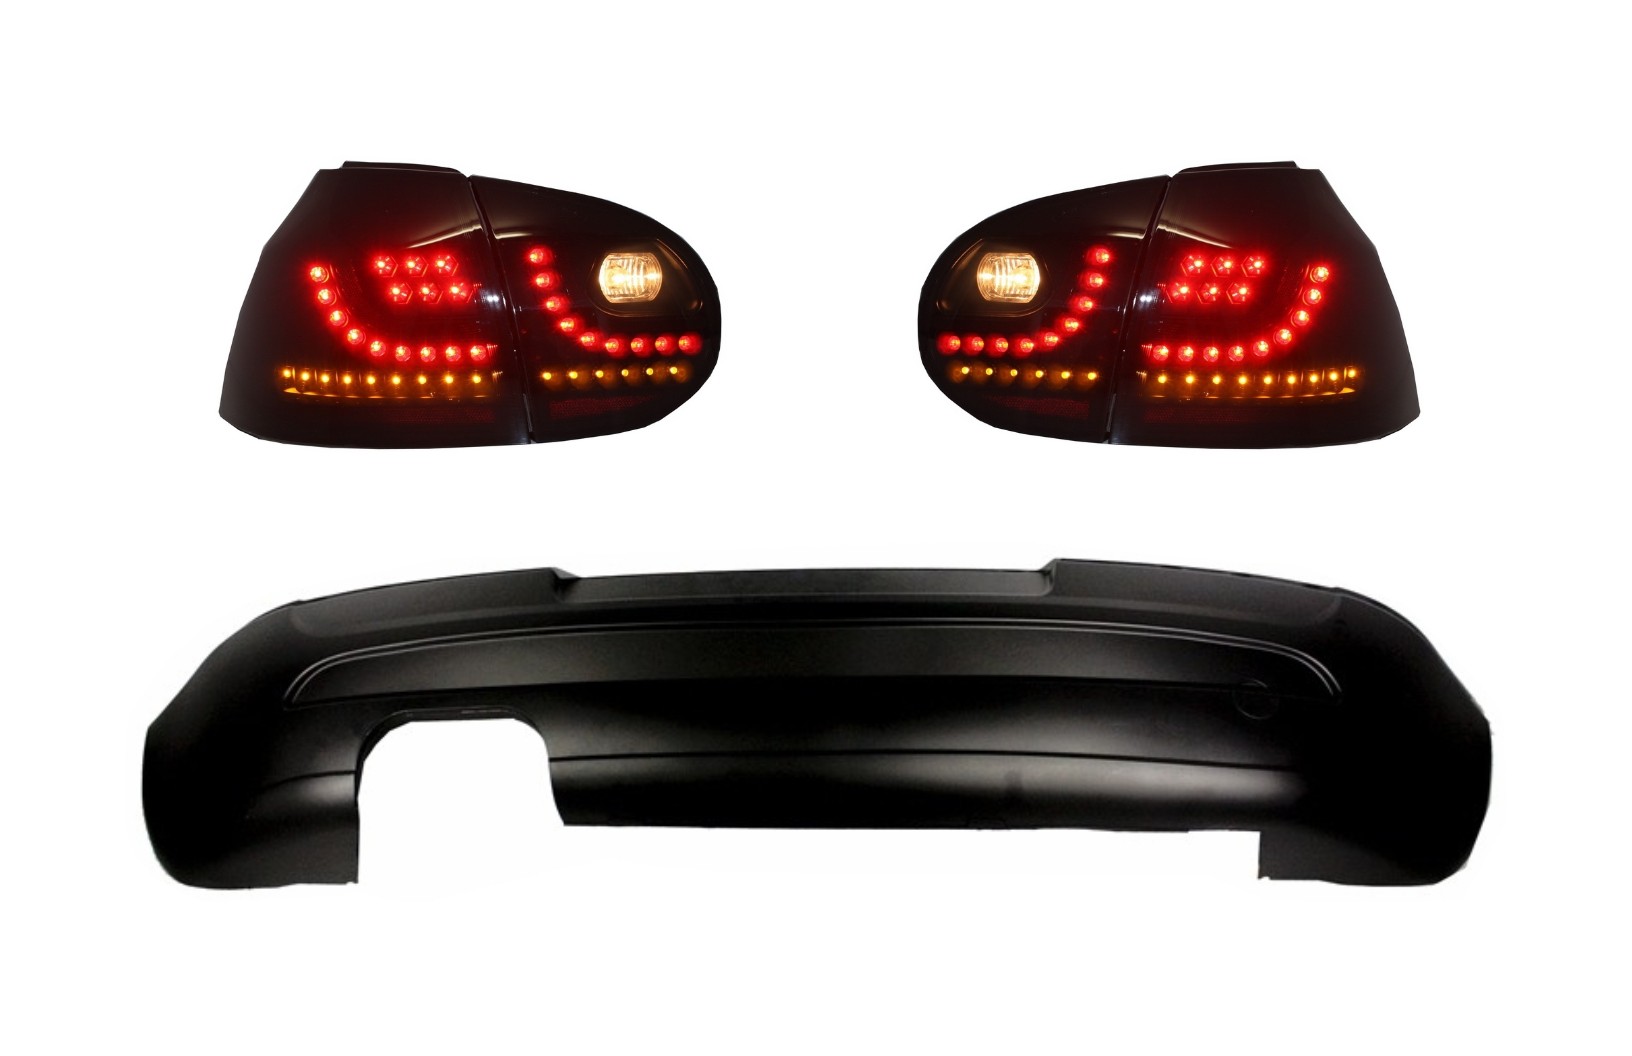 Hátsó lökhárító hosszabbítás LED-es hátsó lámpákkal Smoke alkalmas VW Golf 5 V (2003-2007) GTI Edition 30 Designhoz